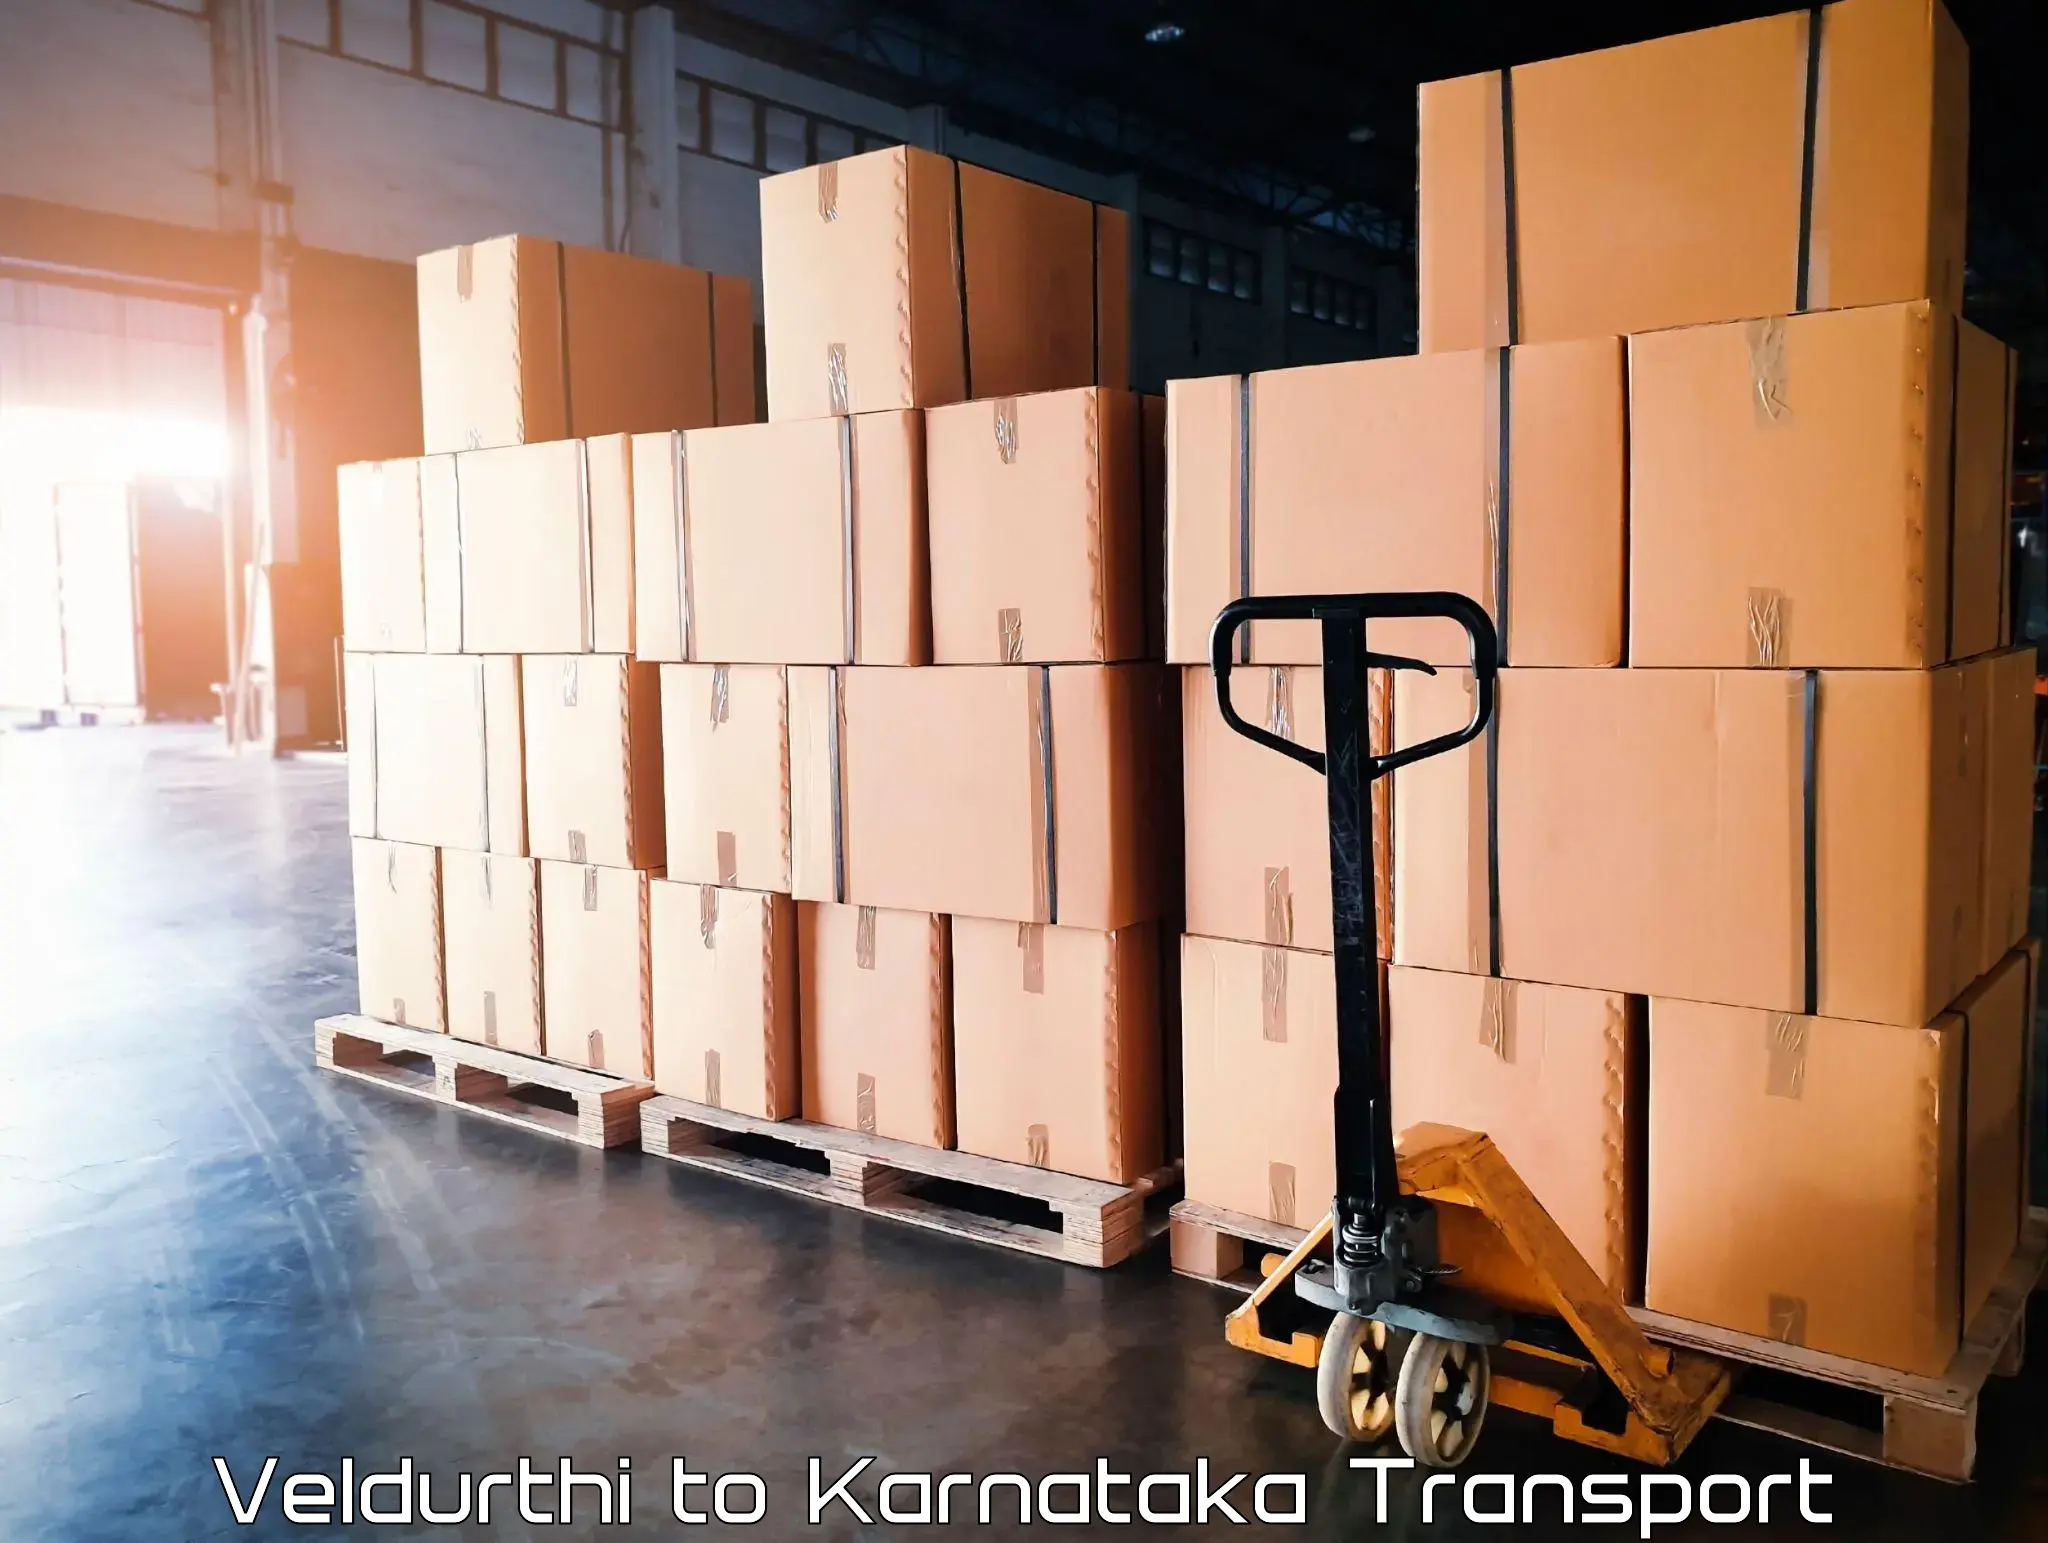 Transportation services Veldurthi to Chikkaballapur